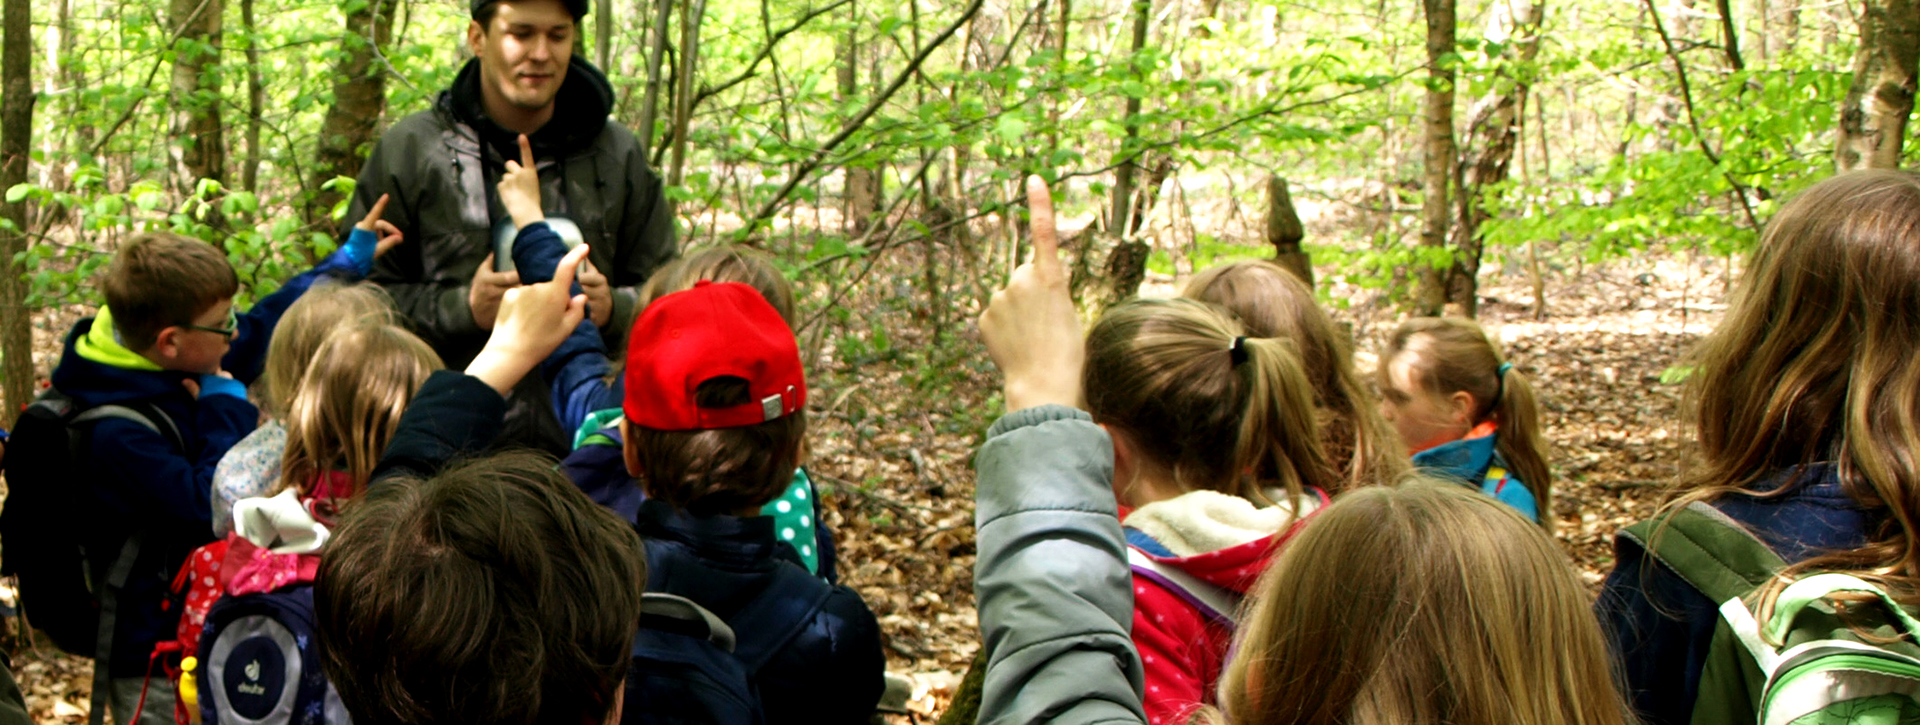 Gruppe Schülerinnen und Schüler steht im Wald und hört einem Mann zu